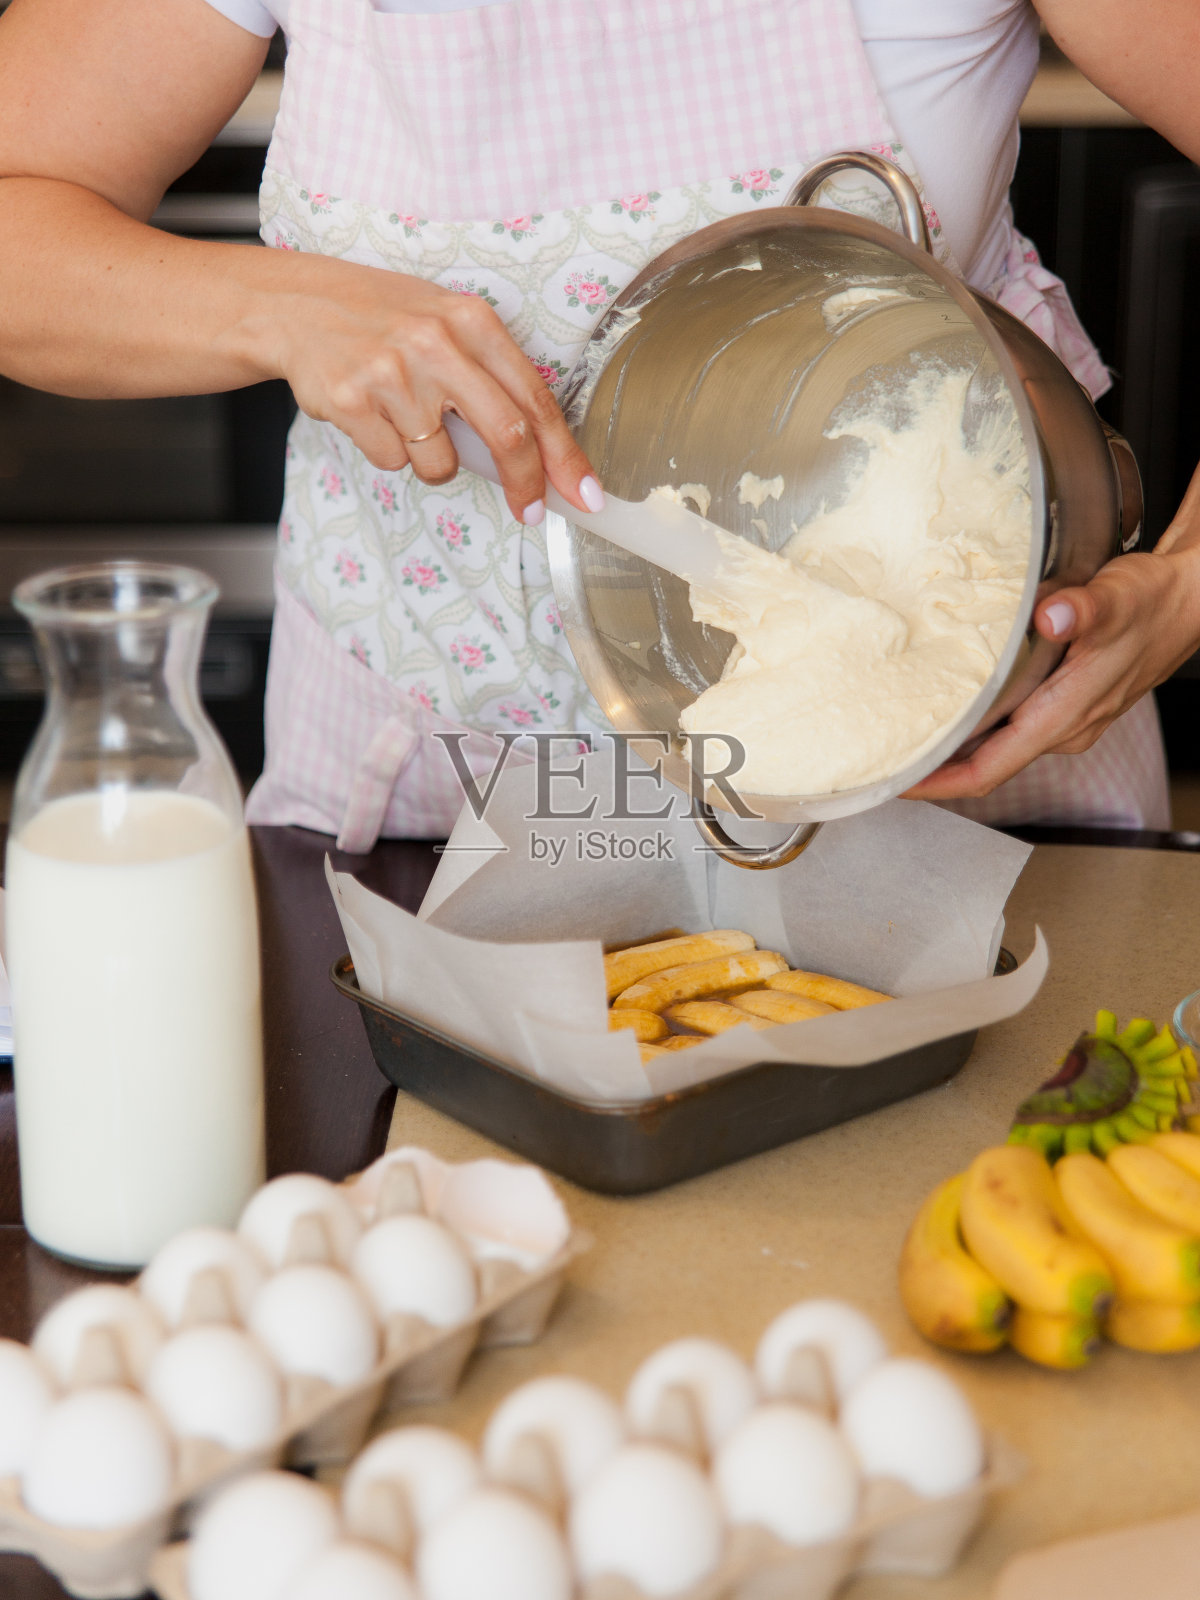 女性用手将面团放入烤盘。厨房的烹饪过程。餐桌上的甜水果甜点配料。照片摄影图片